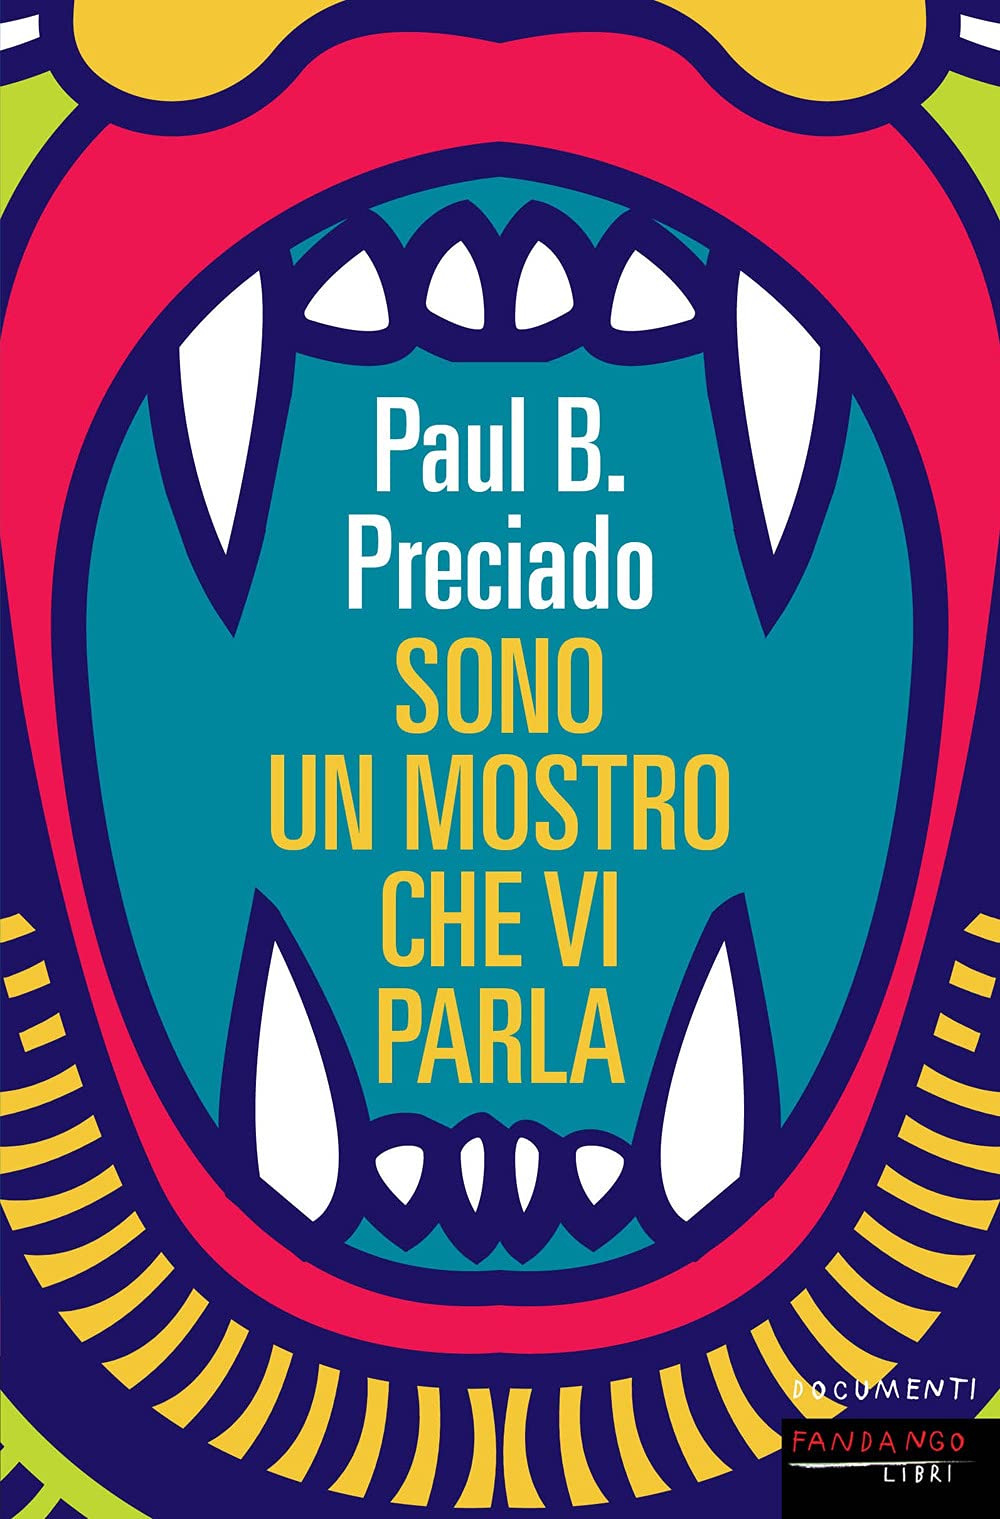 Paul B. Preciado ‒ Sono un mostro che vi parla (Fandango libri, Roma 2021)